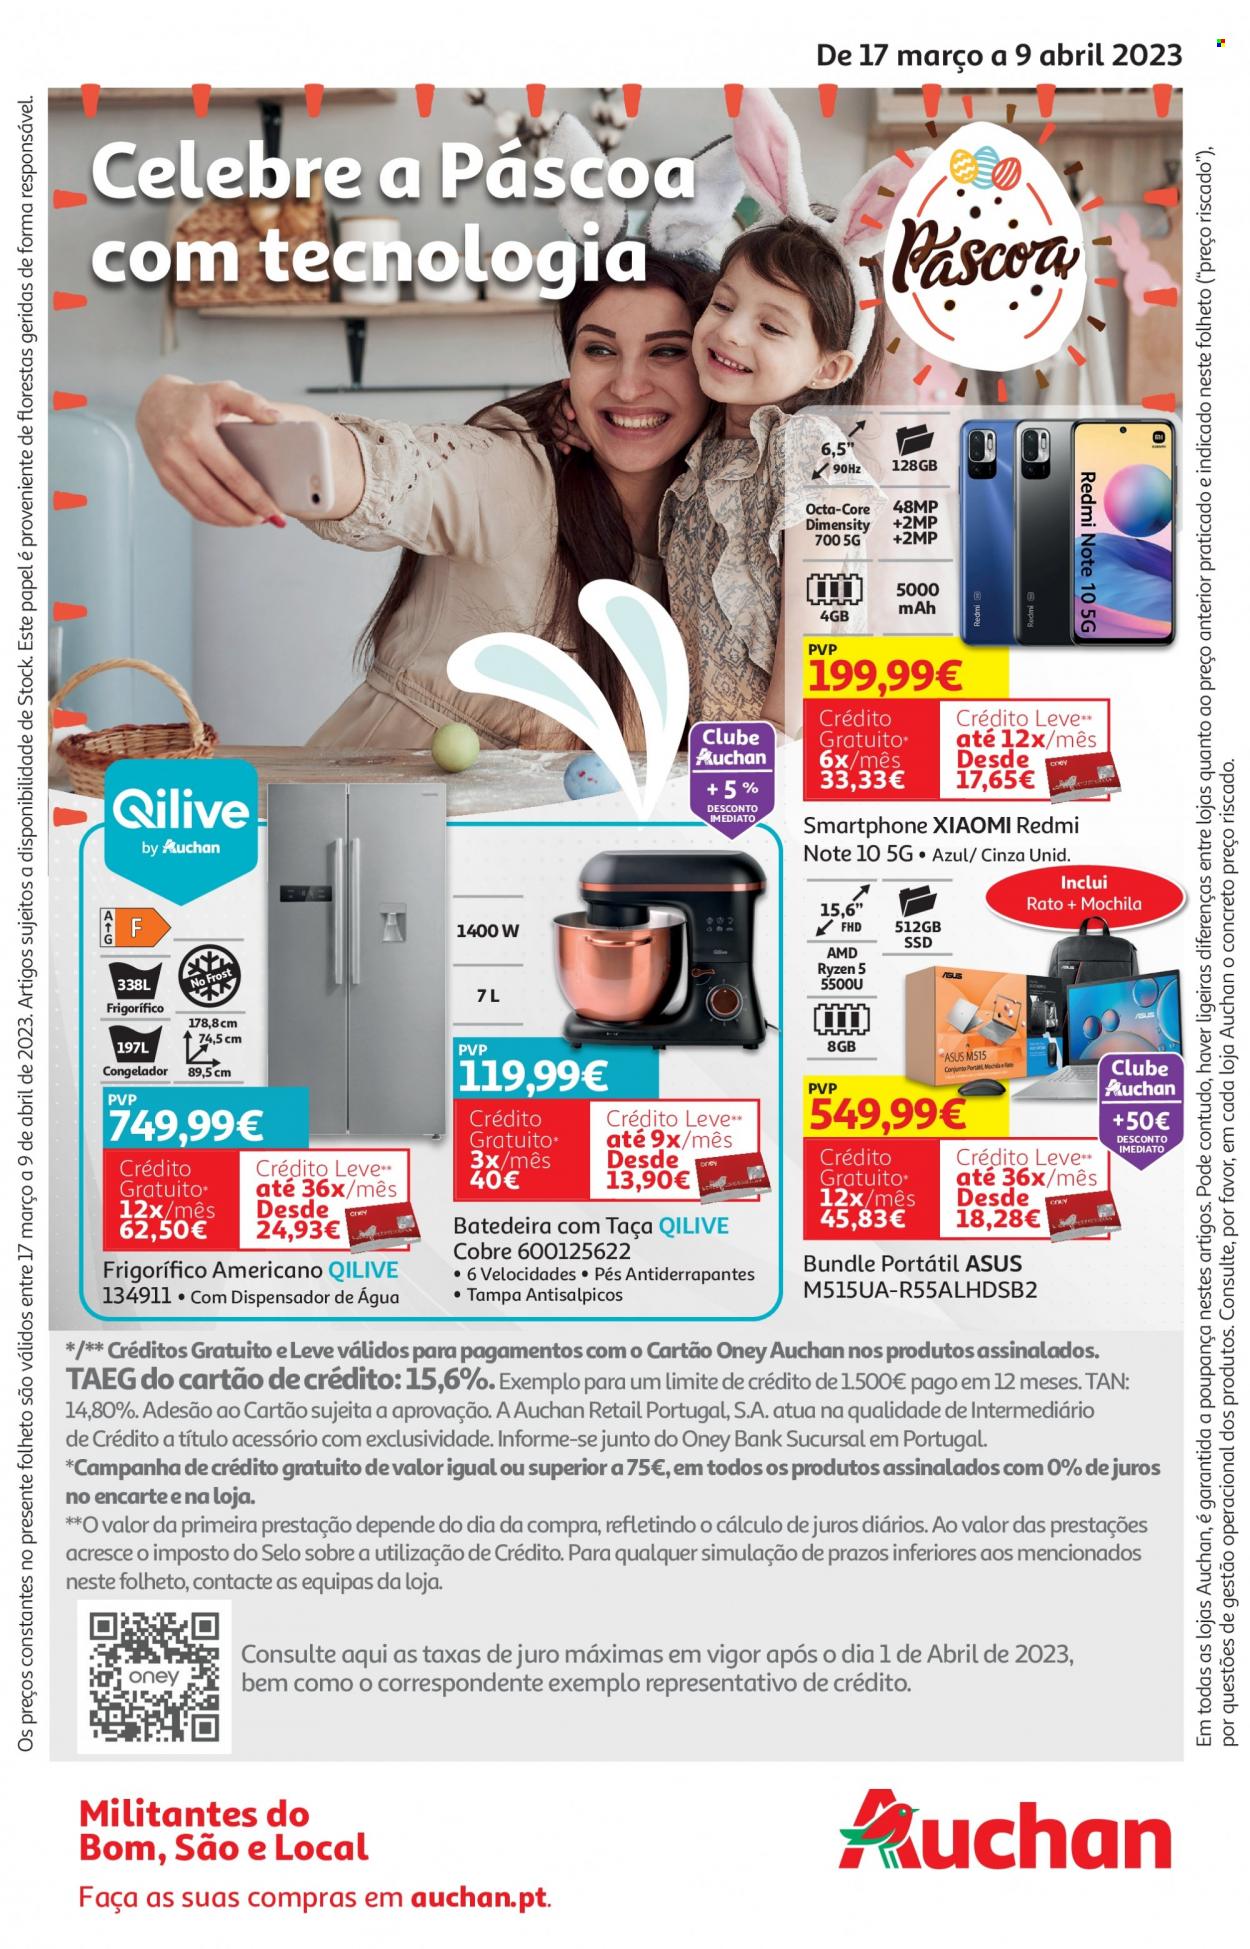 thumbnail - Folheto Auchan - 17.3.2023 - 9.4.2023 - Produtos em promoção - mochila, Asus, smartphone, Redmi, PC portátil, mouse, refrigerador, frigorífico, frigorífico americano, batedeira, Qilive. Página 1.